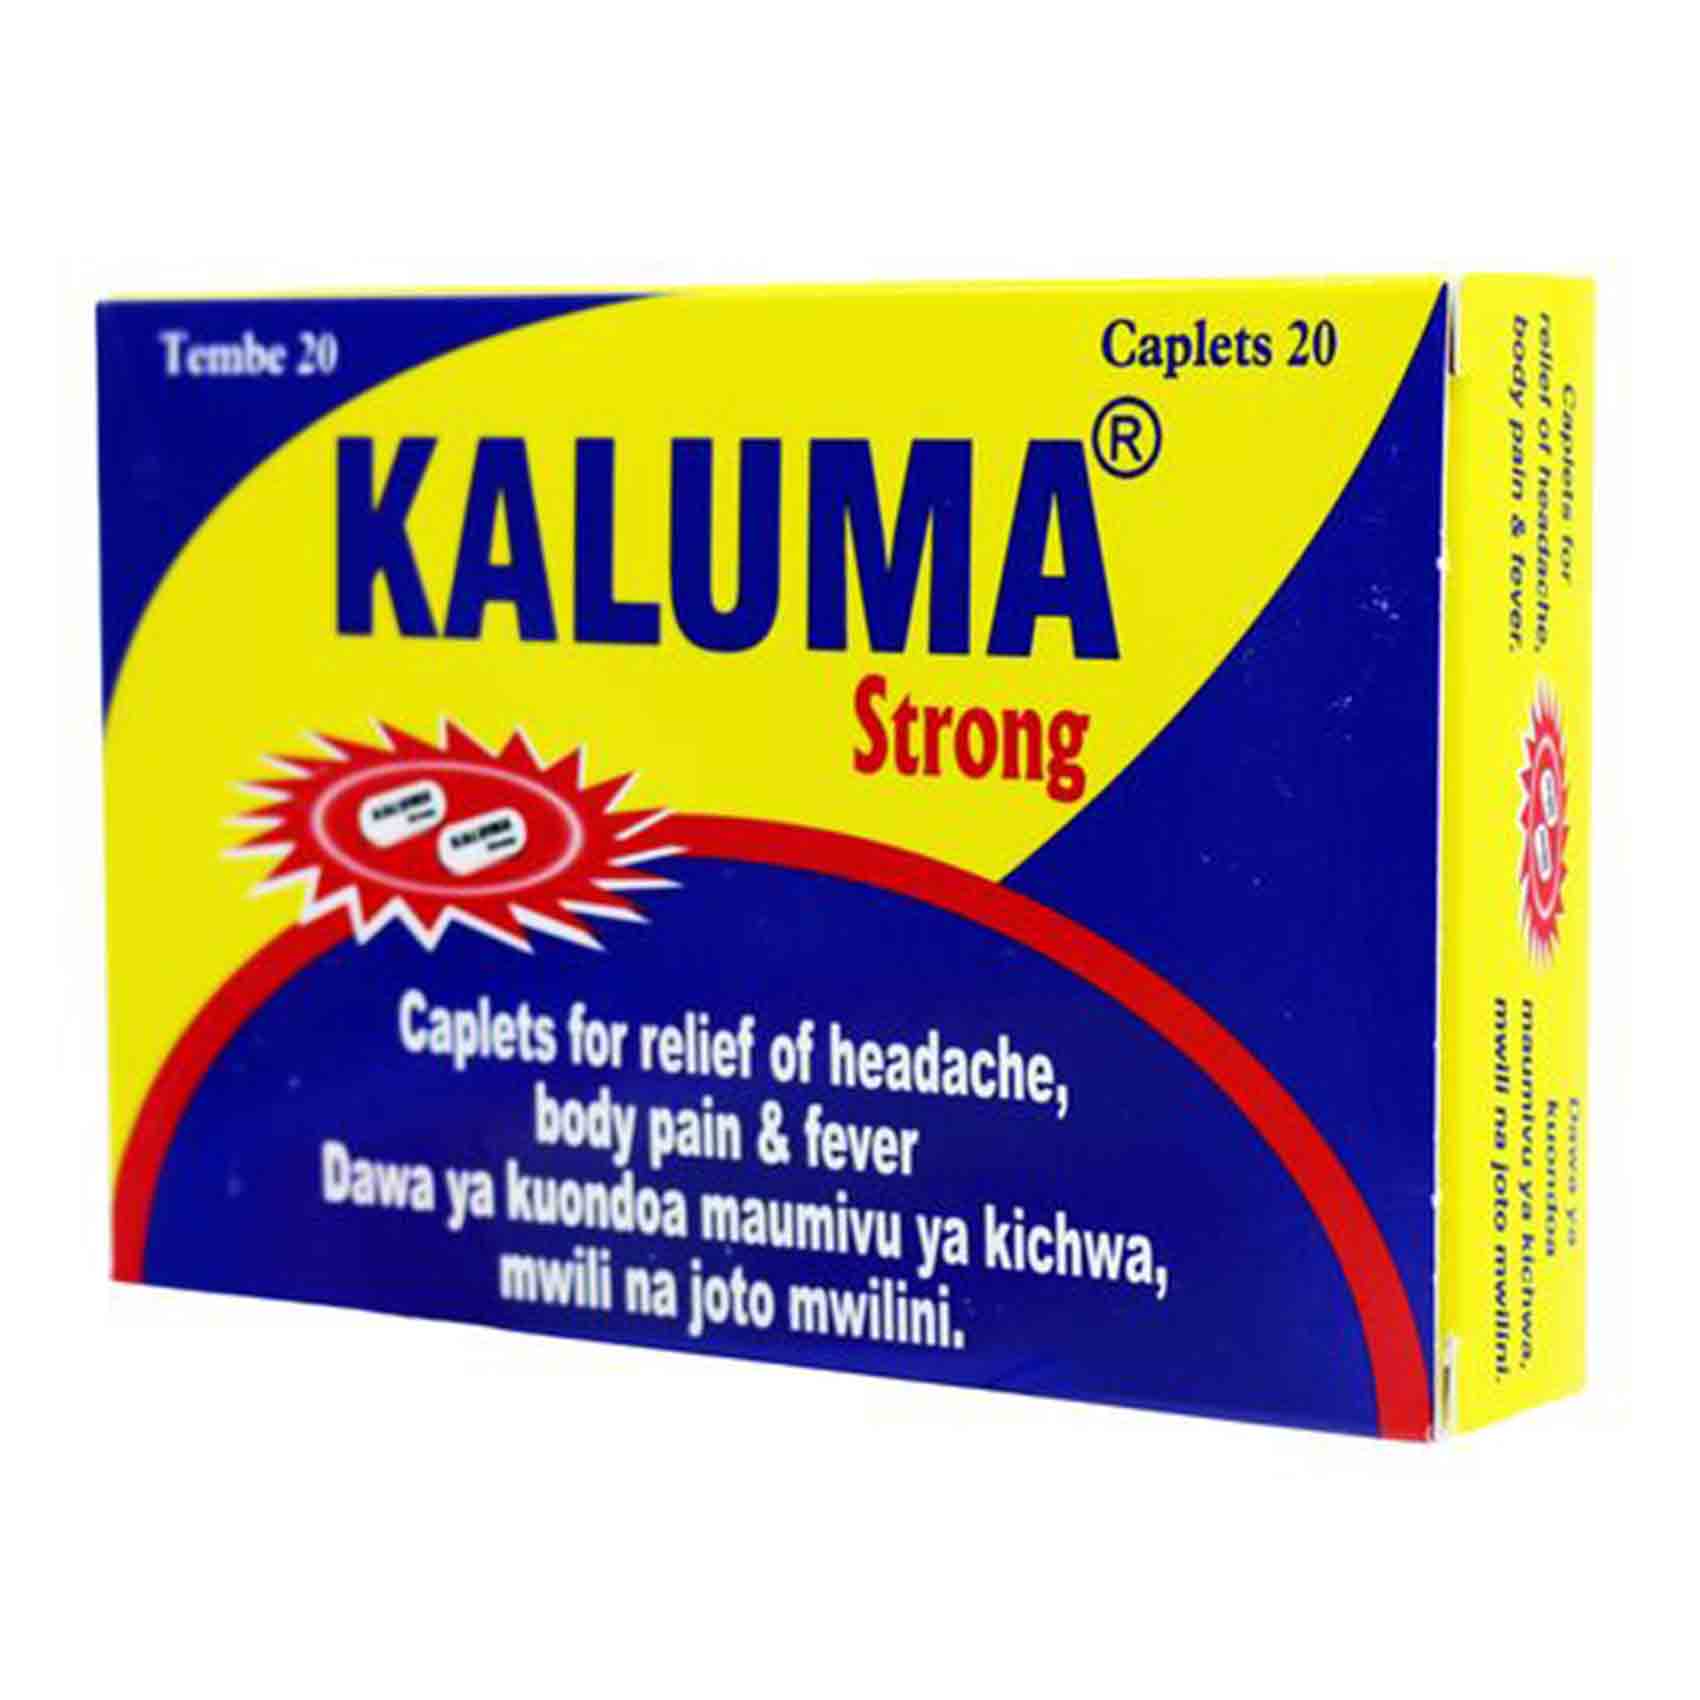 Kaluma Strong Caplets 20 Pieces